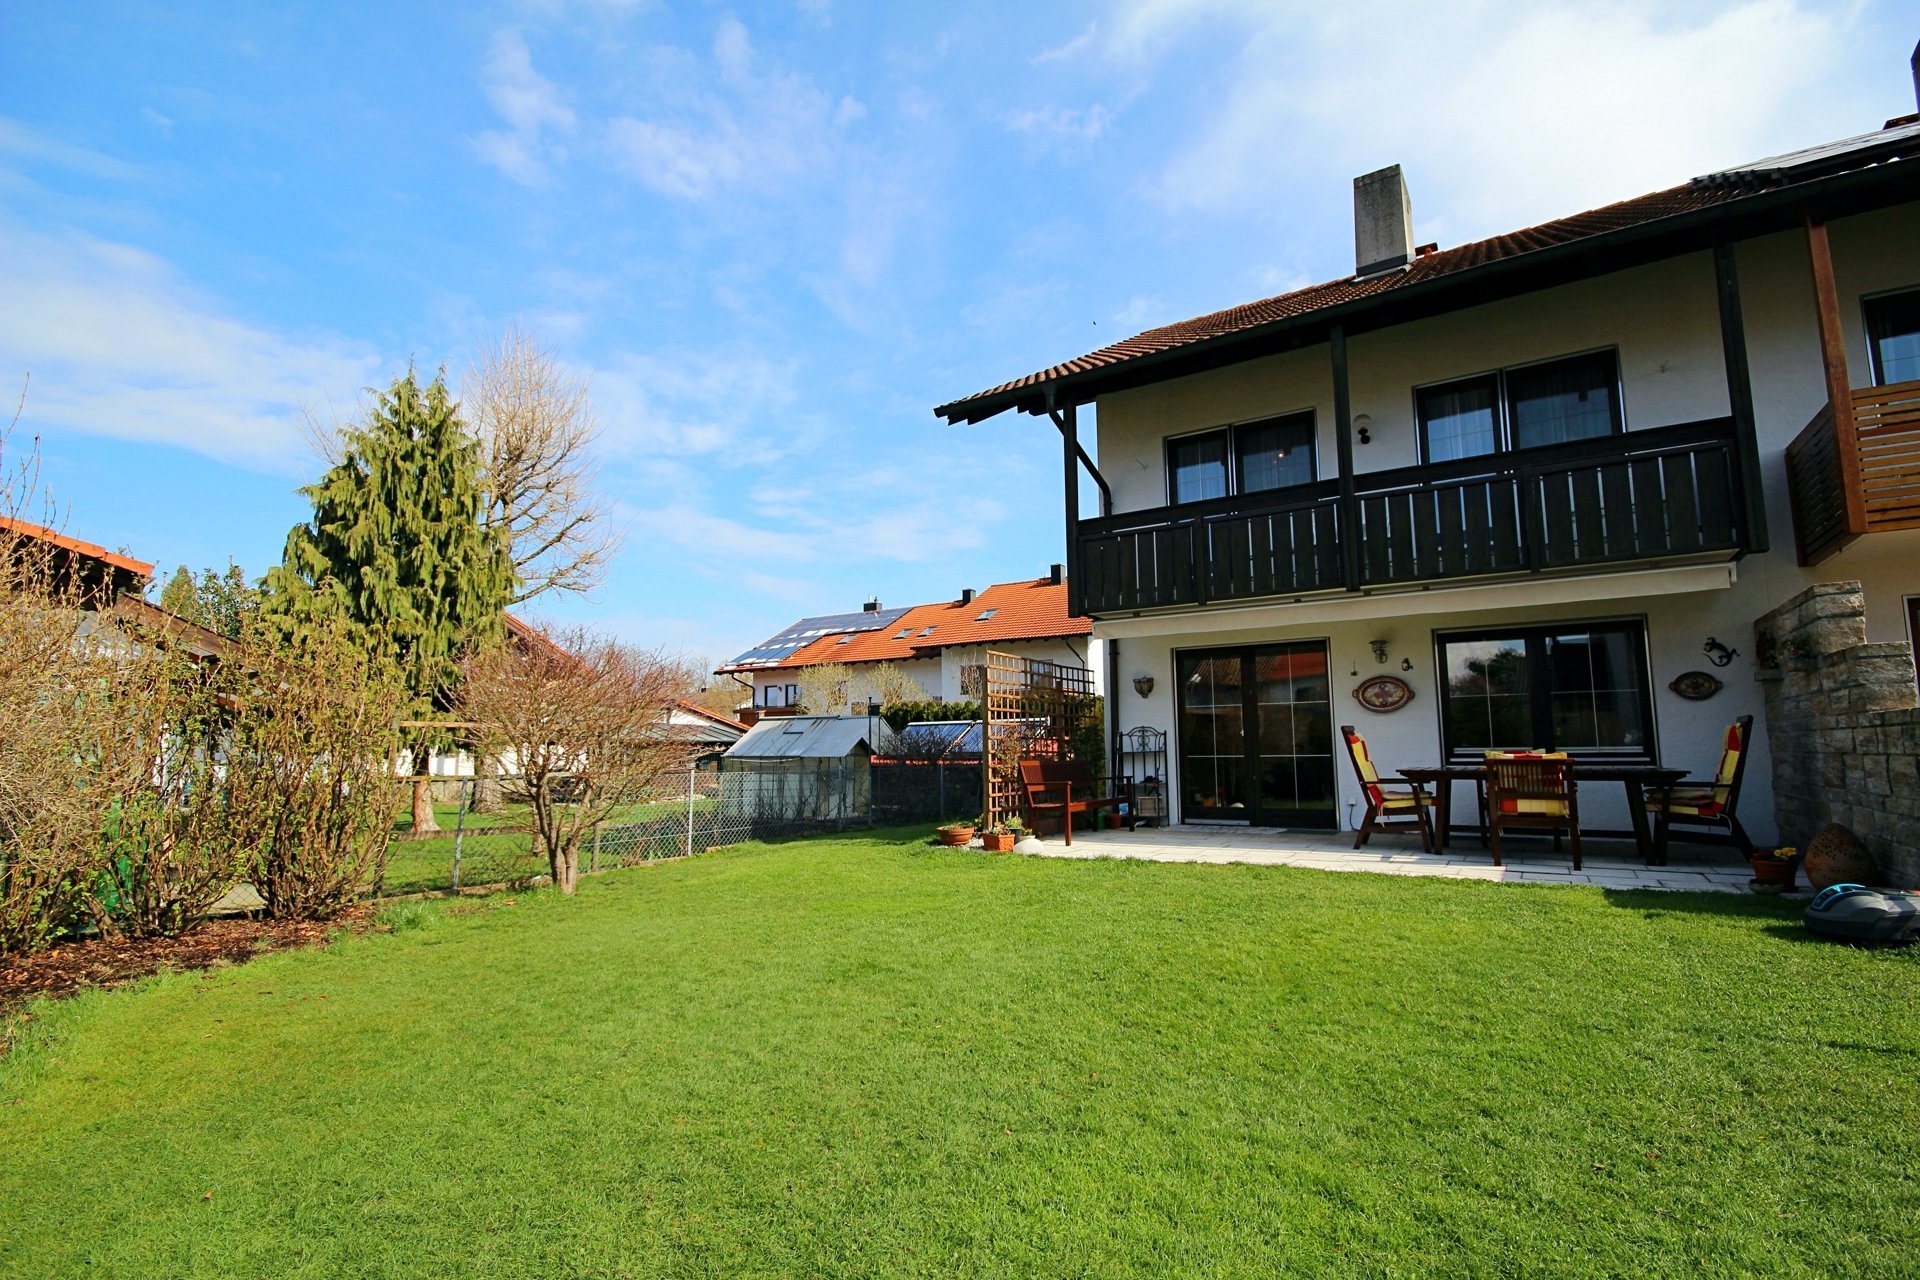 Immobilienangebot - Rosenheim - Haus - Alpenländische Idylle! Ruhig gelegene DHH mit Terrasse und Garten in Rosenheim!